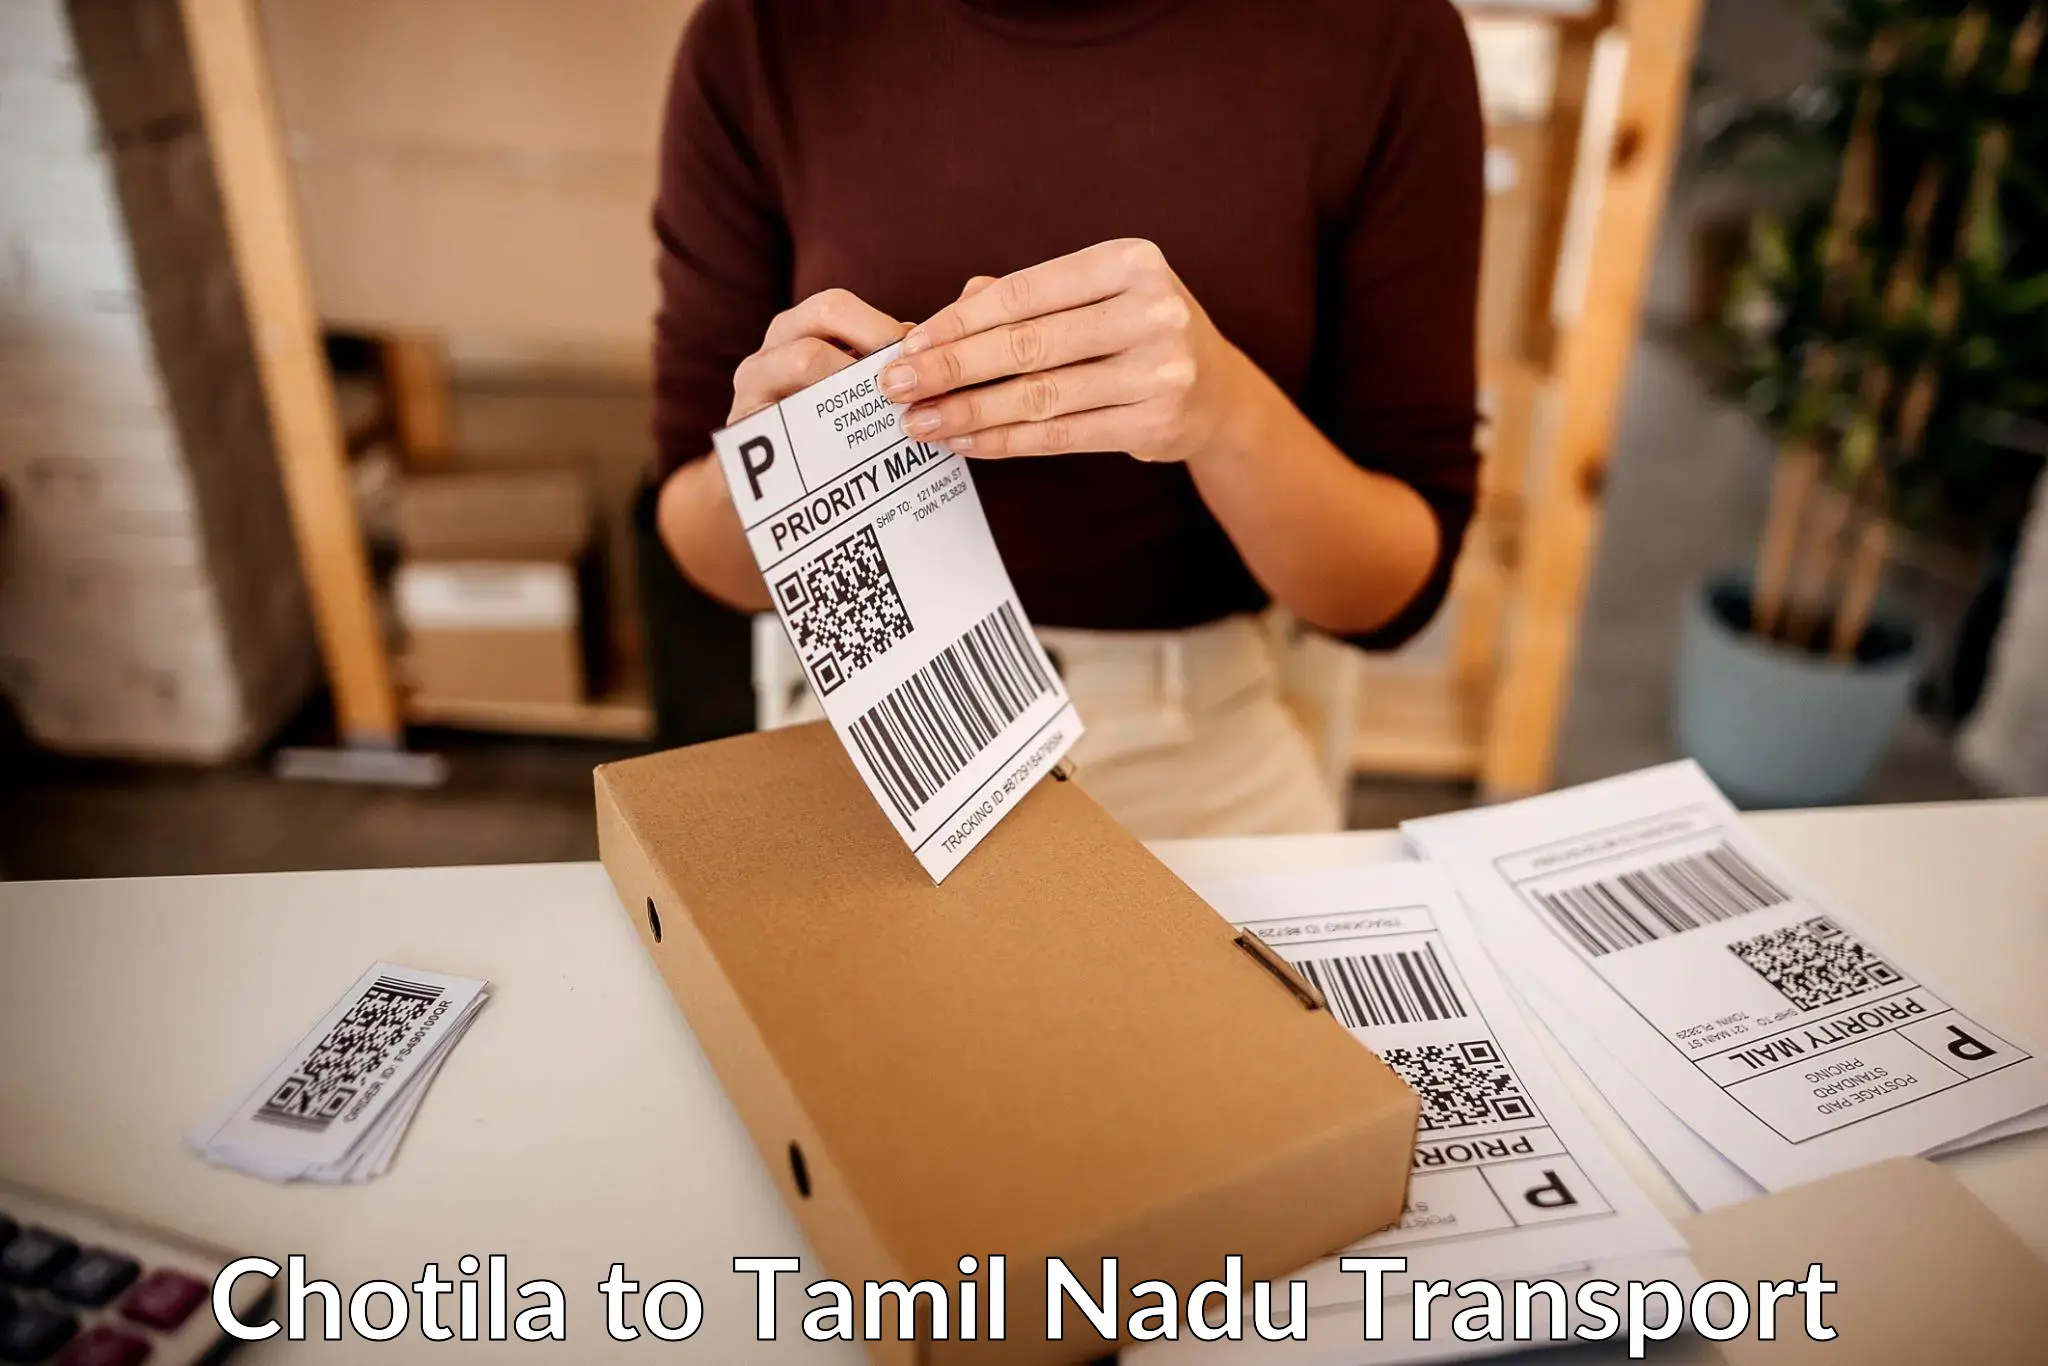 Daily parcel service transport Chotila to Tamil Nadu